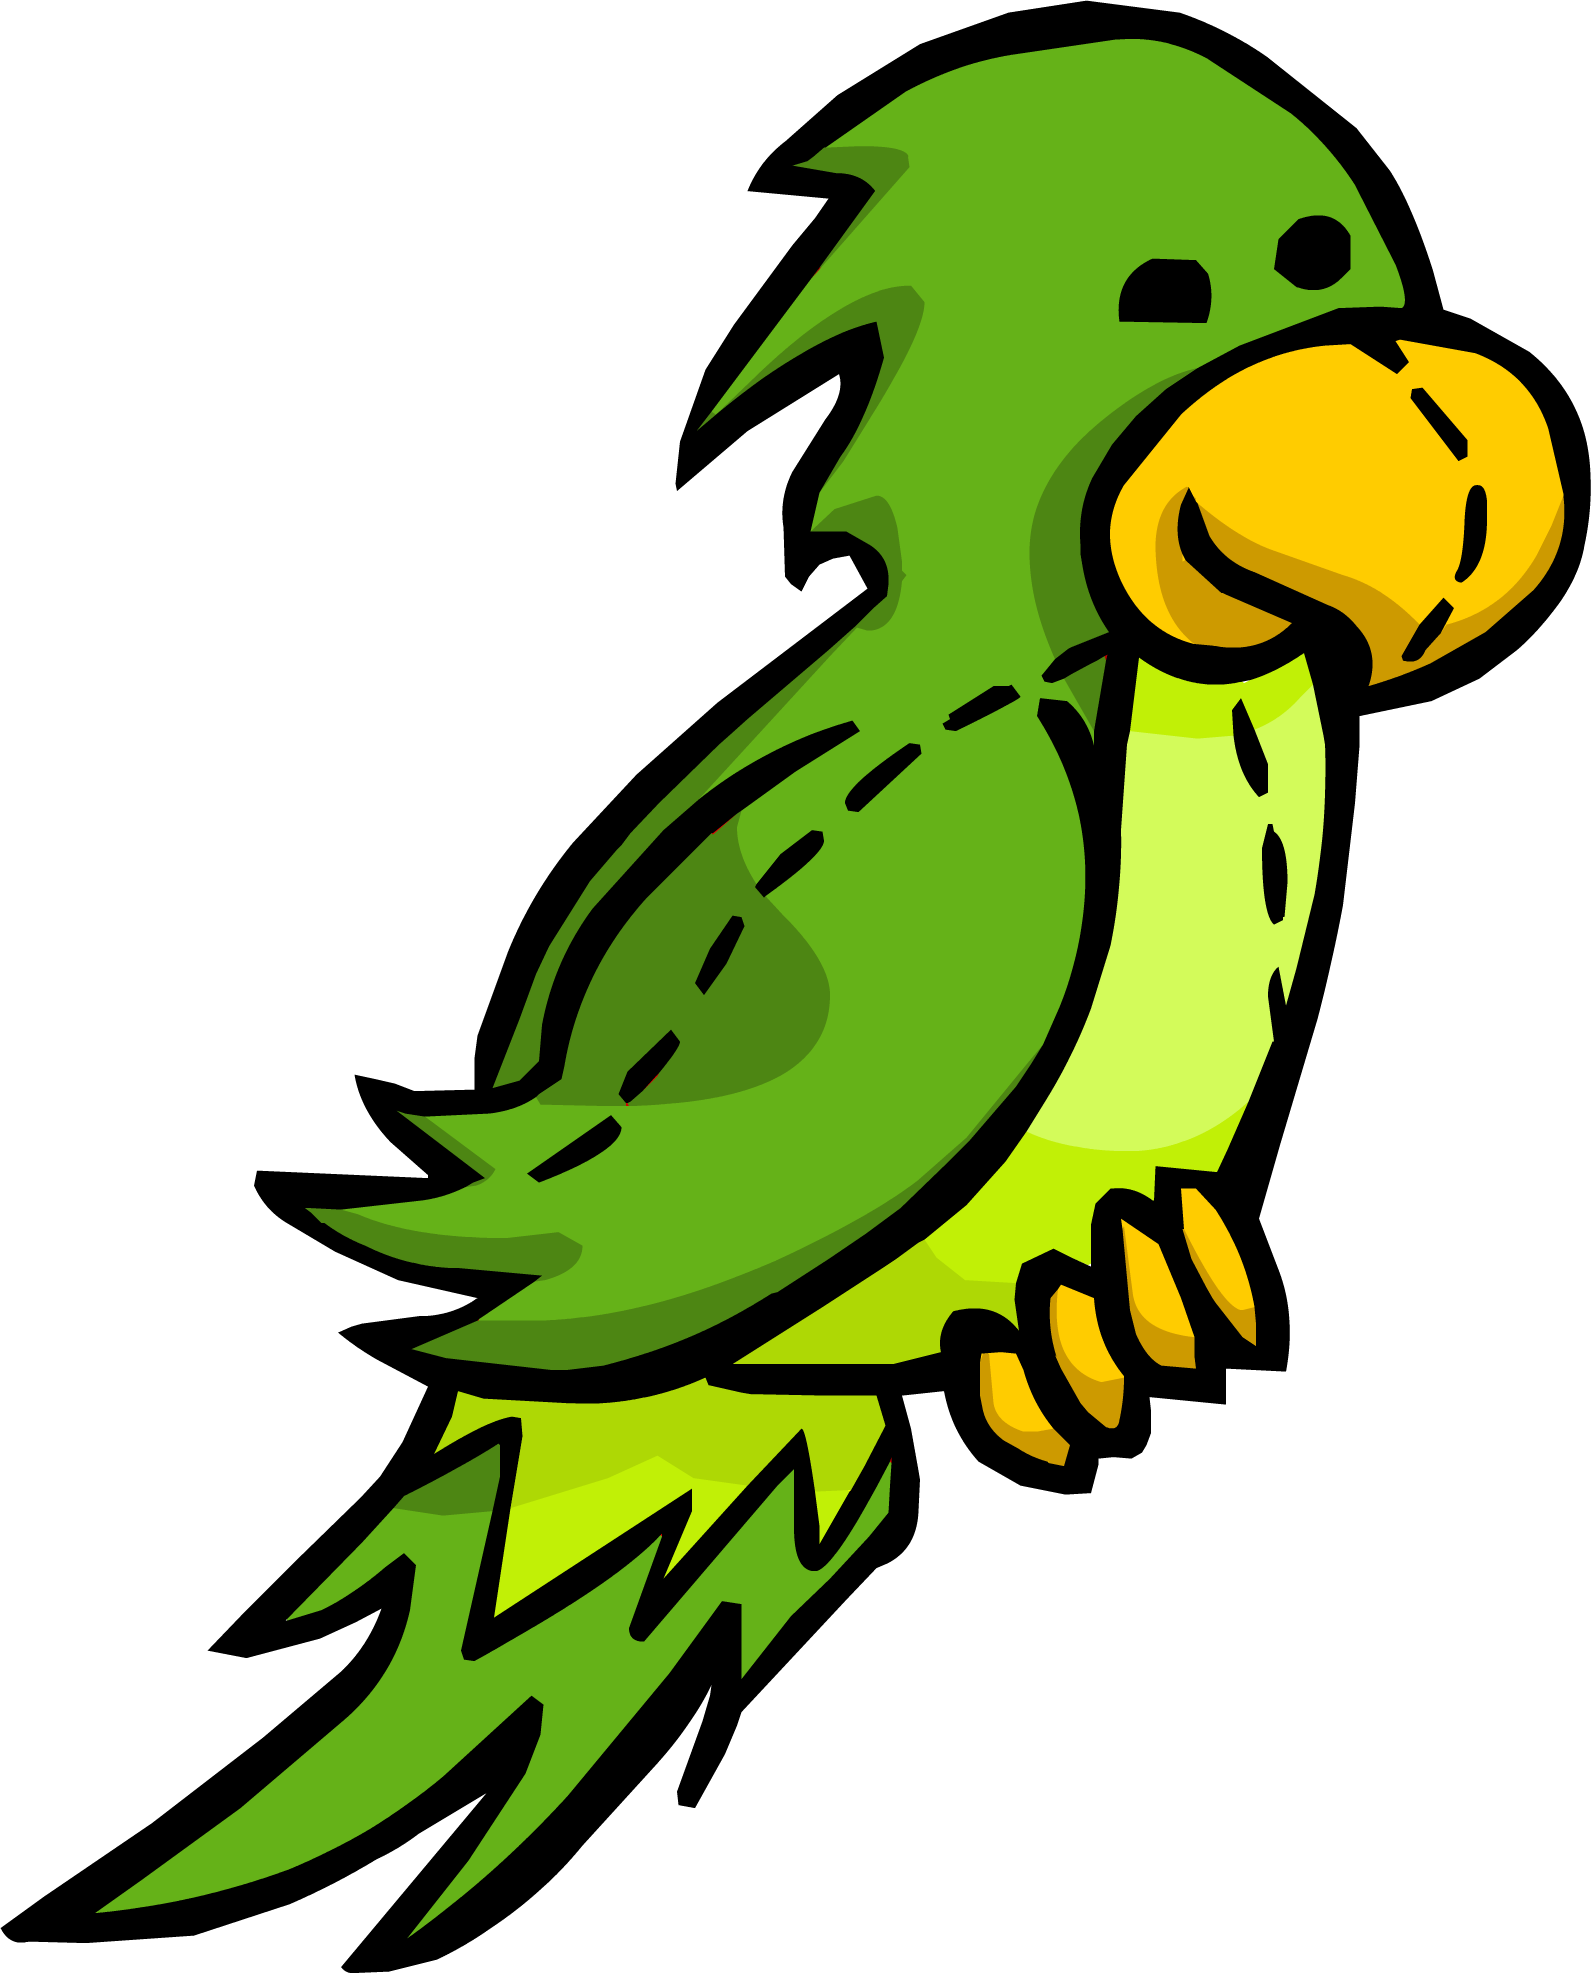 Parrot green parrot